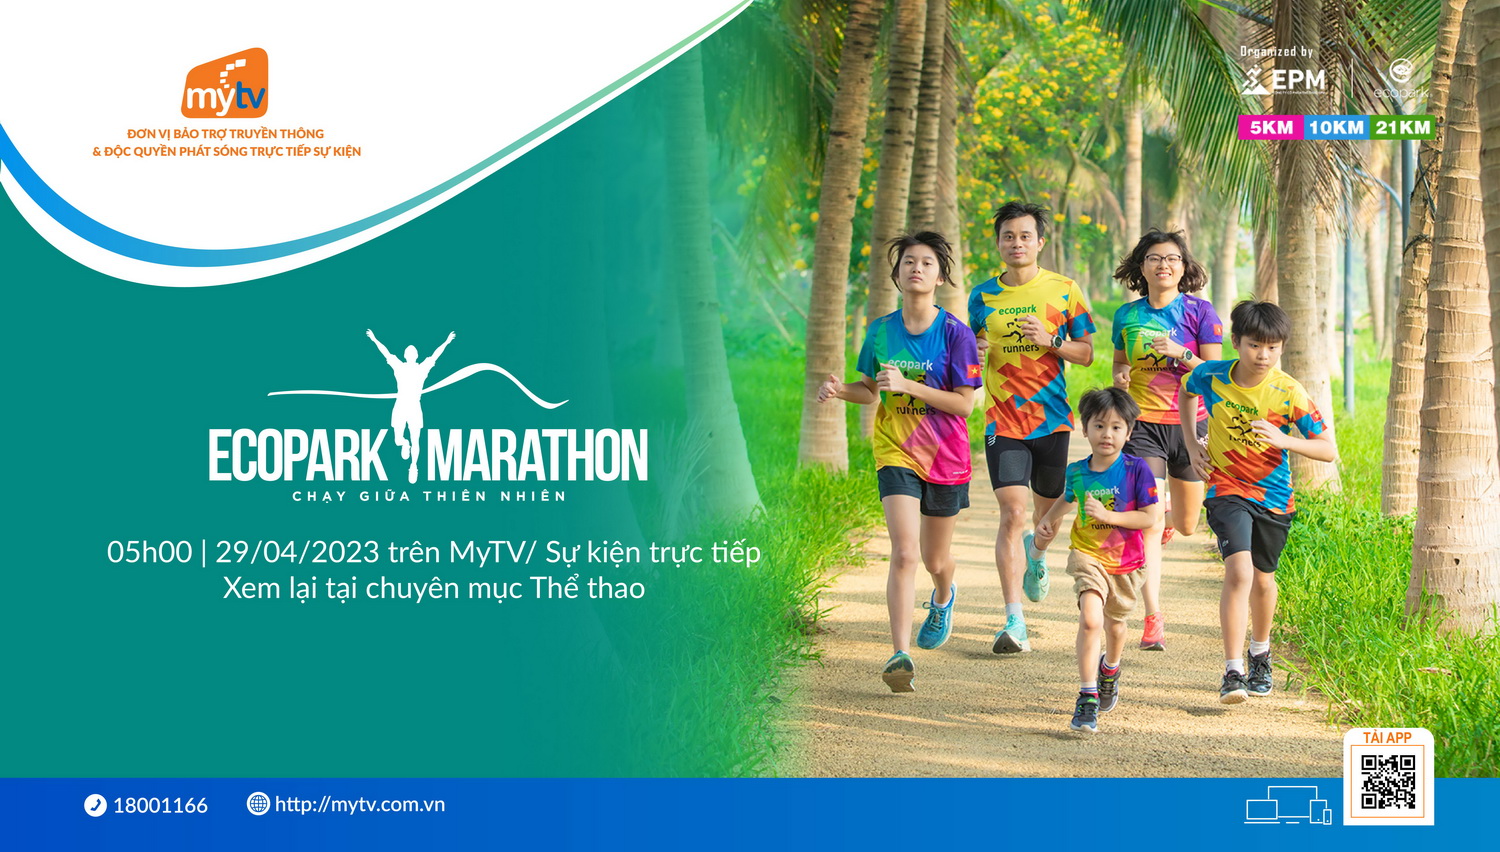 Truyền hình MyTV bảo trợ truyền thông & độc quyền phát sóng Ecopark Marathon 2023